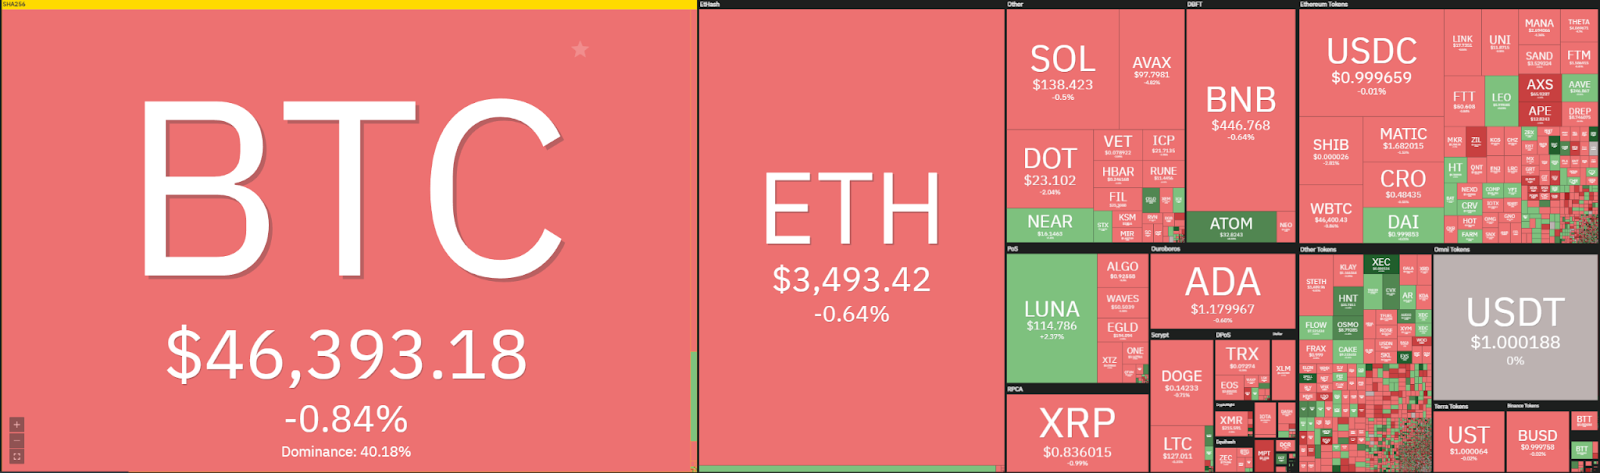 Ethereum price analysis: ETH still holds below $3,500, slow retracement next week? 1